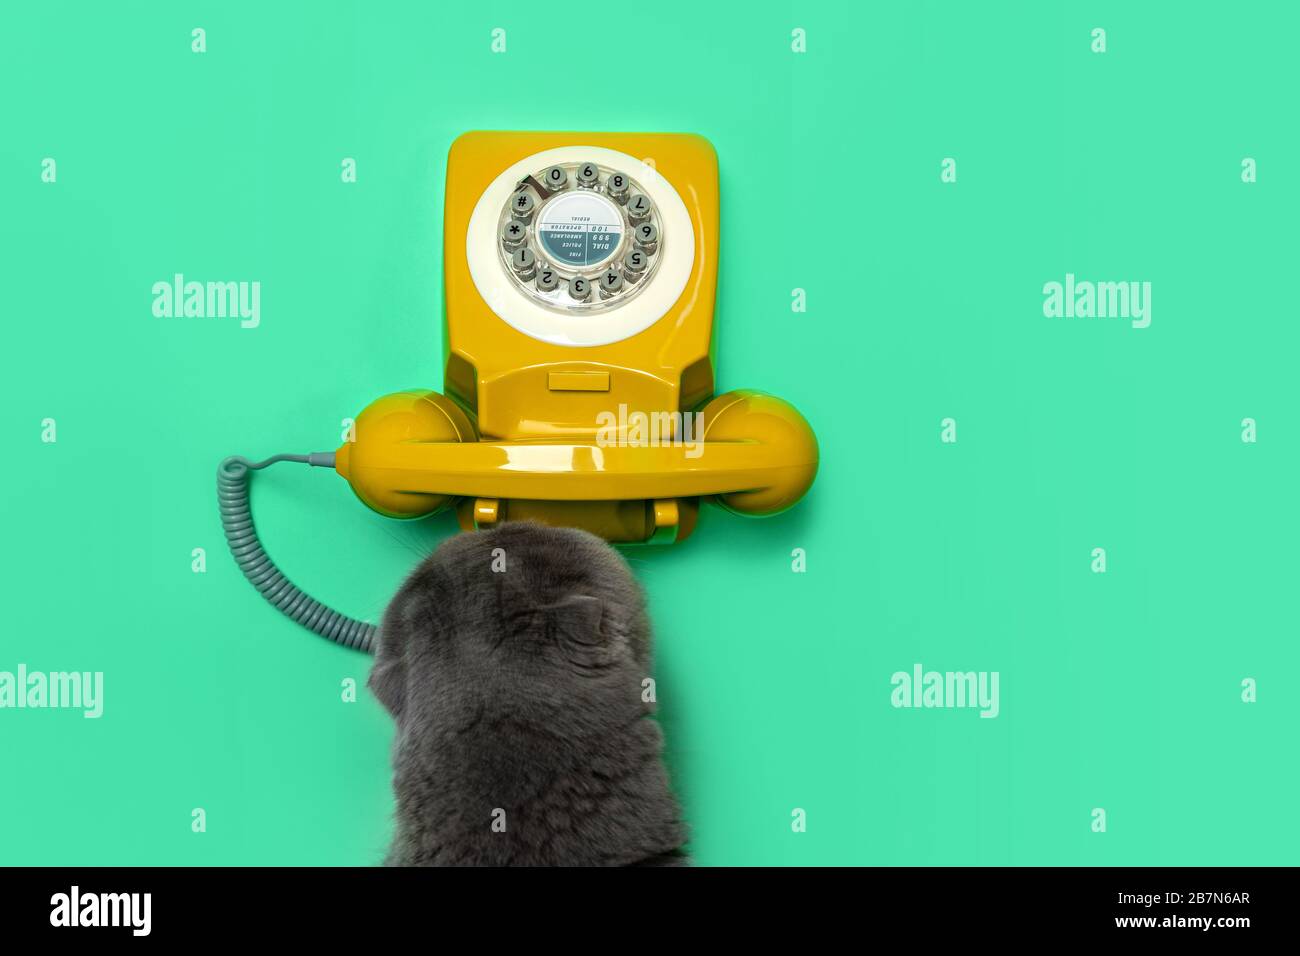 Rotationstelefon und Katze im Retro-Look auf grünem Minzfarbenhintergrund. Flaches Layout, Draufsicht, Kopierbereich. Stockfoto